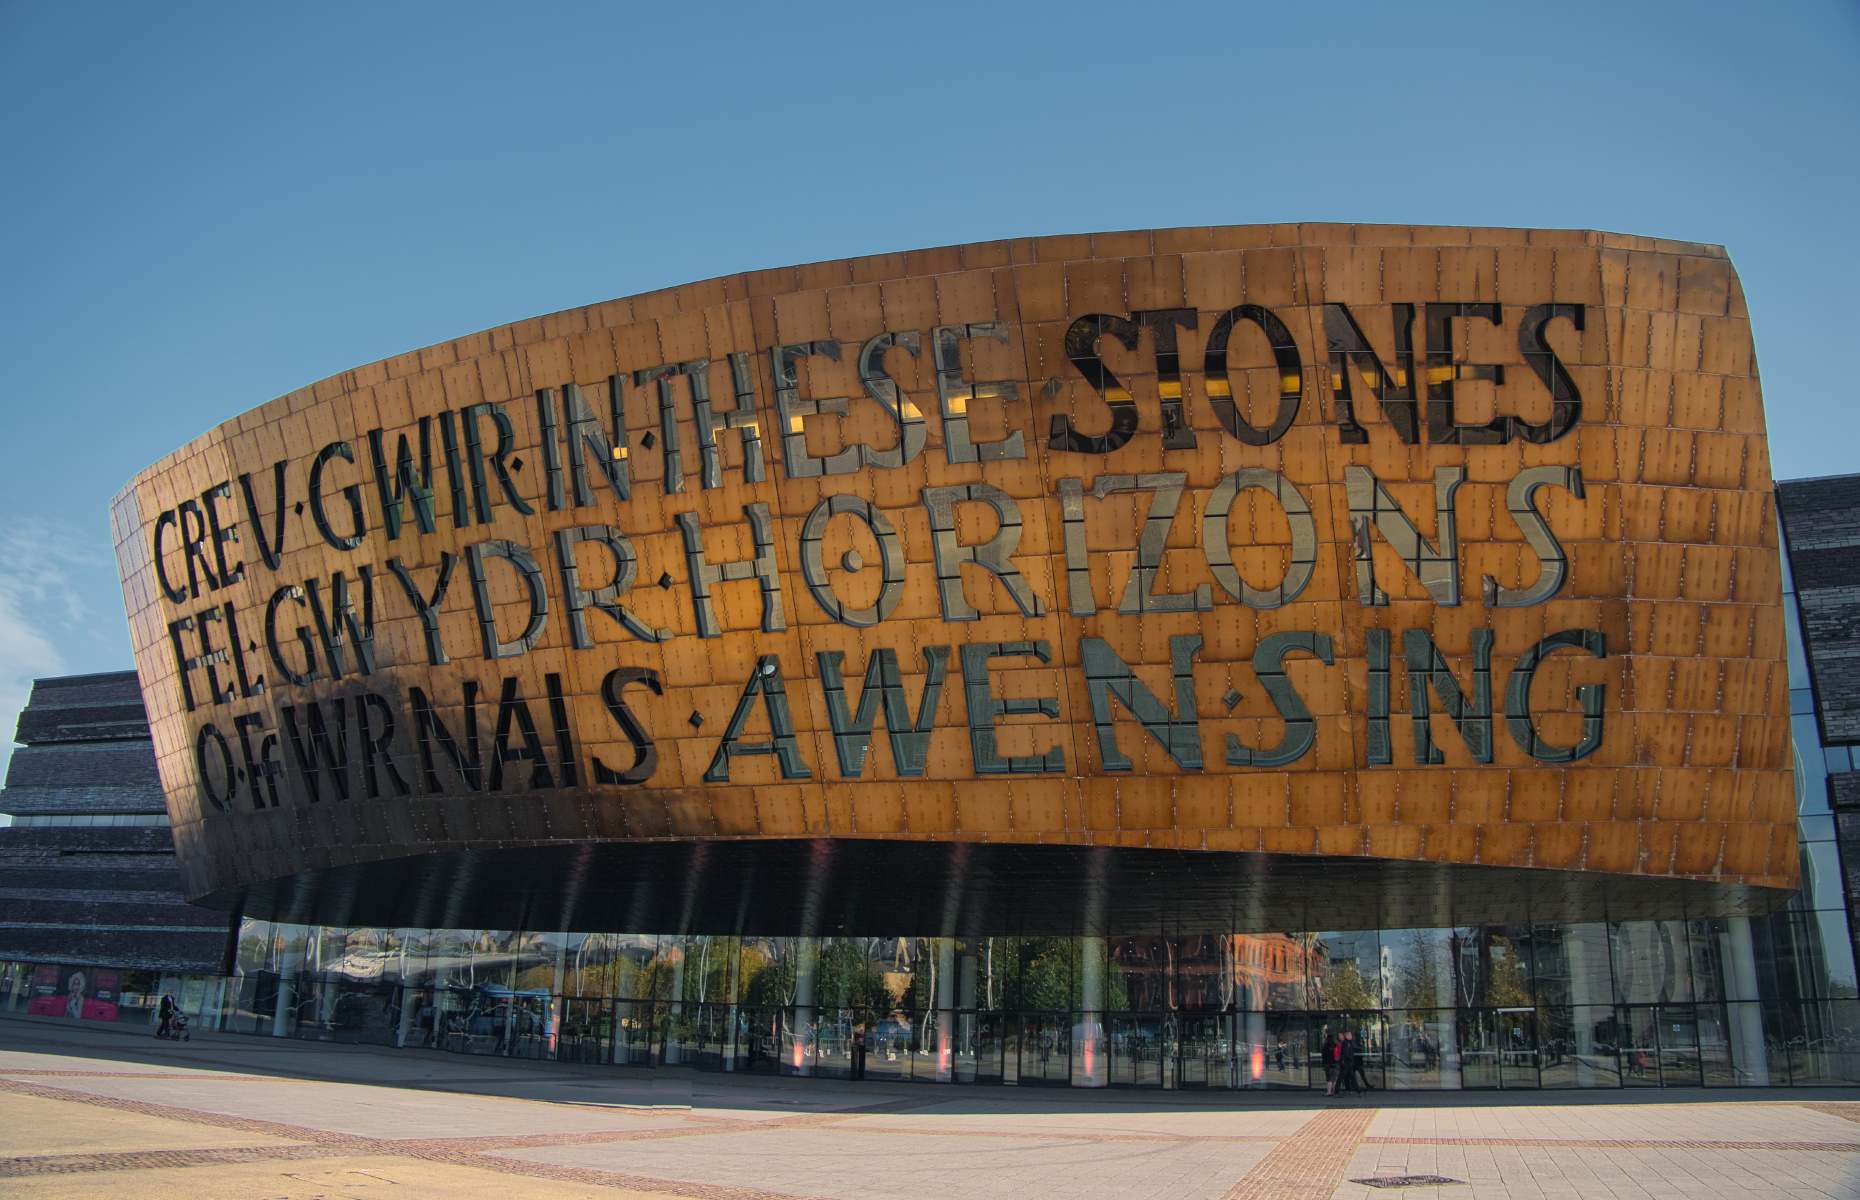 Wales Millennium Centre (Image: AlanMorris/Shutterstock)